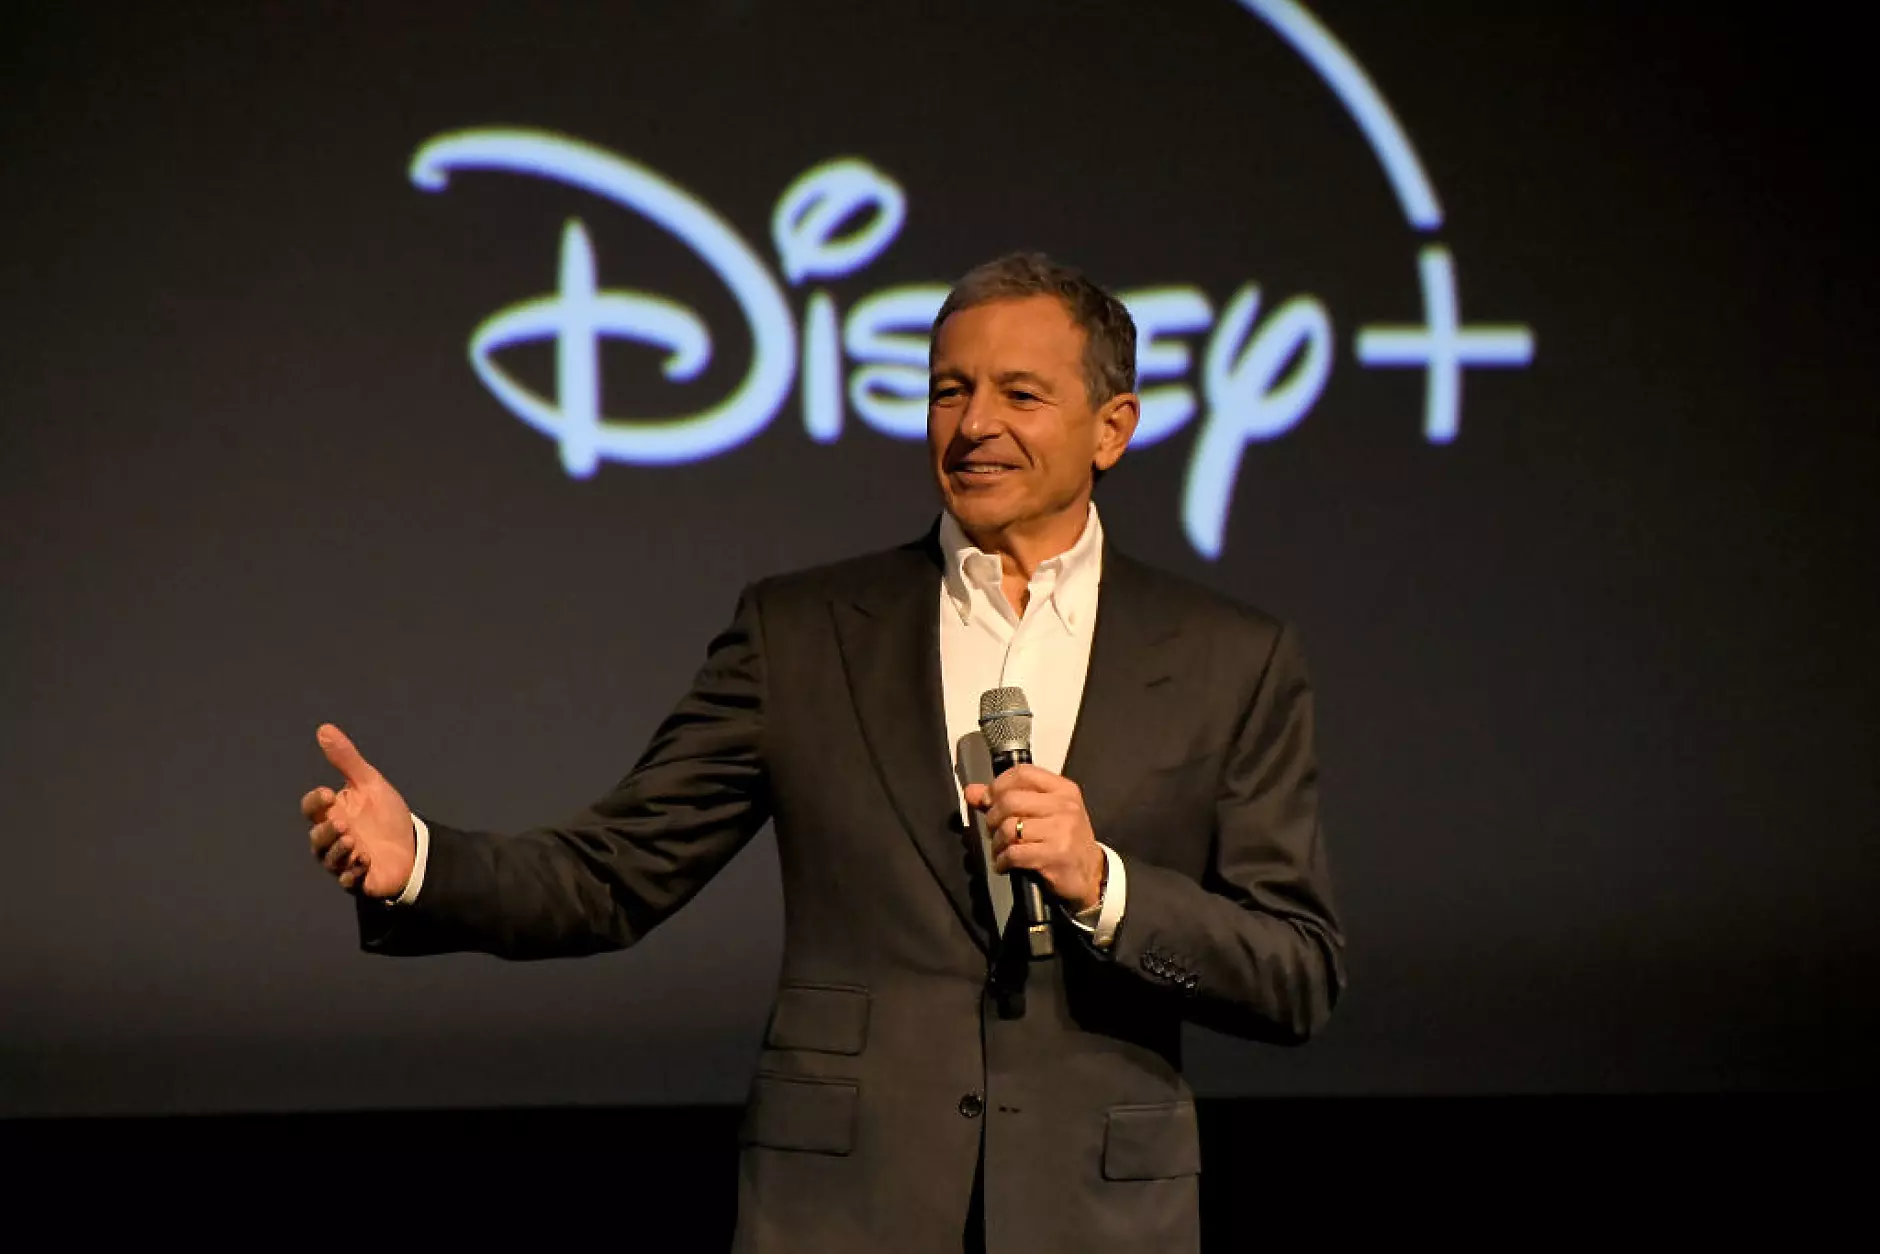  Боб Айгър се завръща начело на Disney